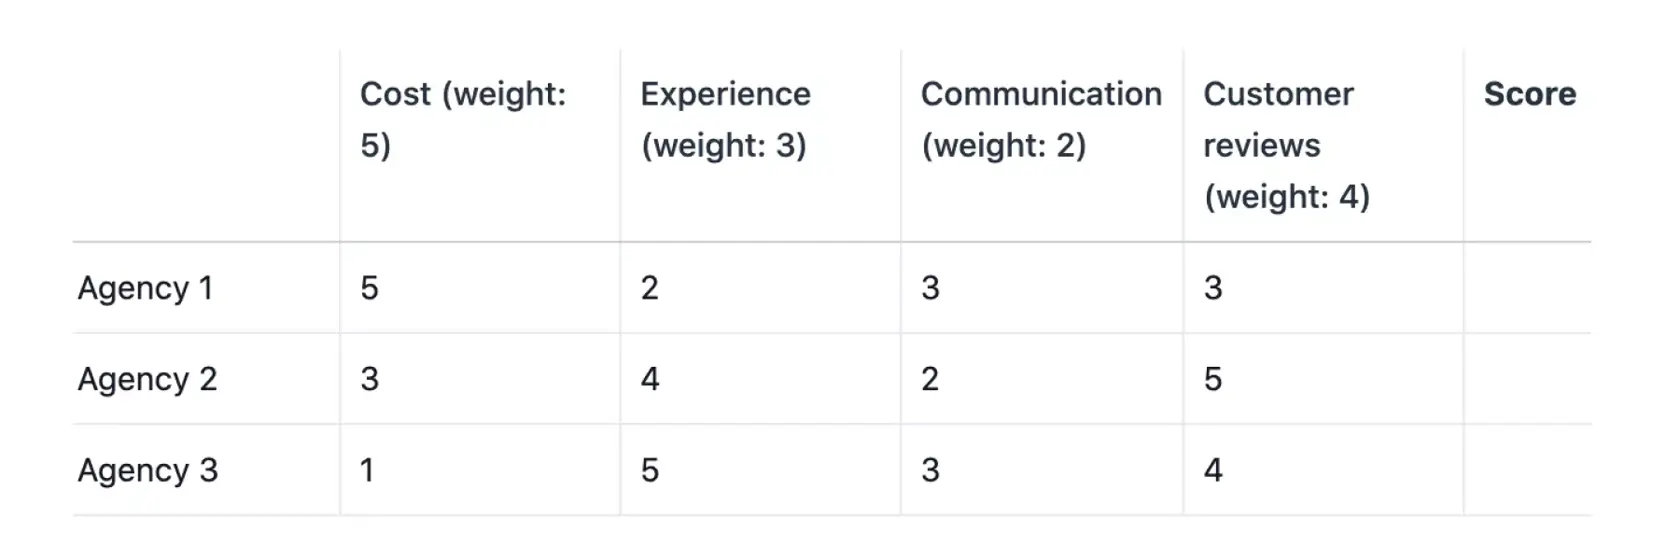 Matriz de decisões para escolher entre três agências de design usando pesos diferentes